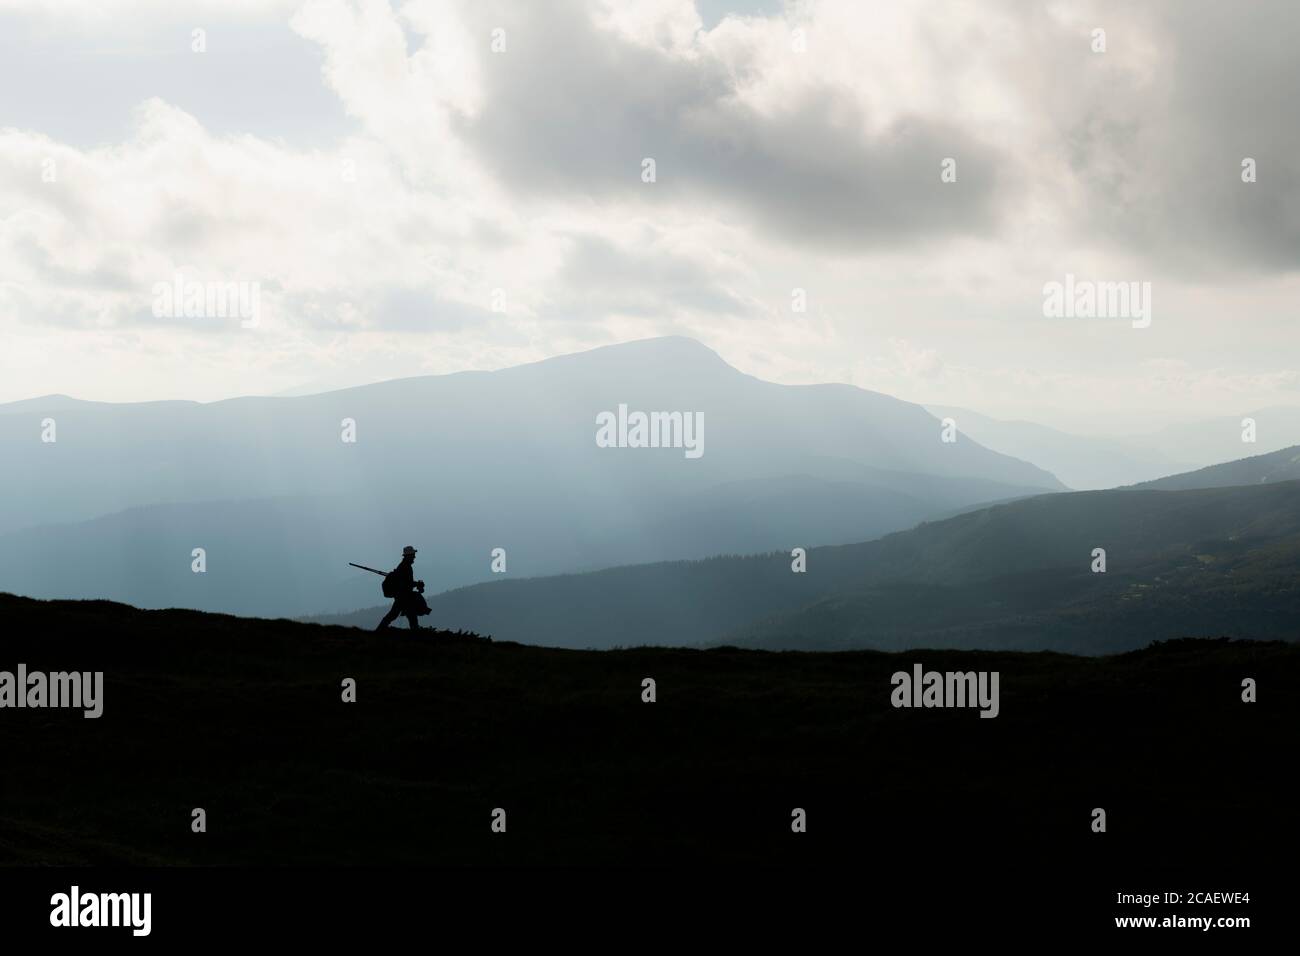 Une silhouette d'un photographe avec un trépied contre la toile de fond des montagnes majestueuses. Photographie de paysage Banque D'Images